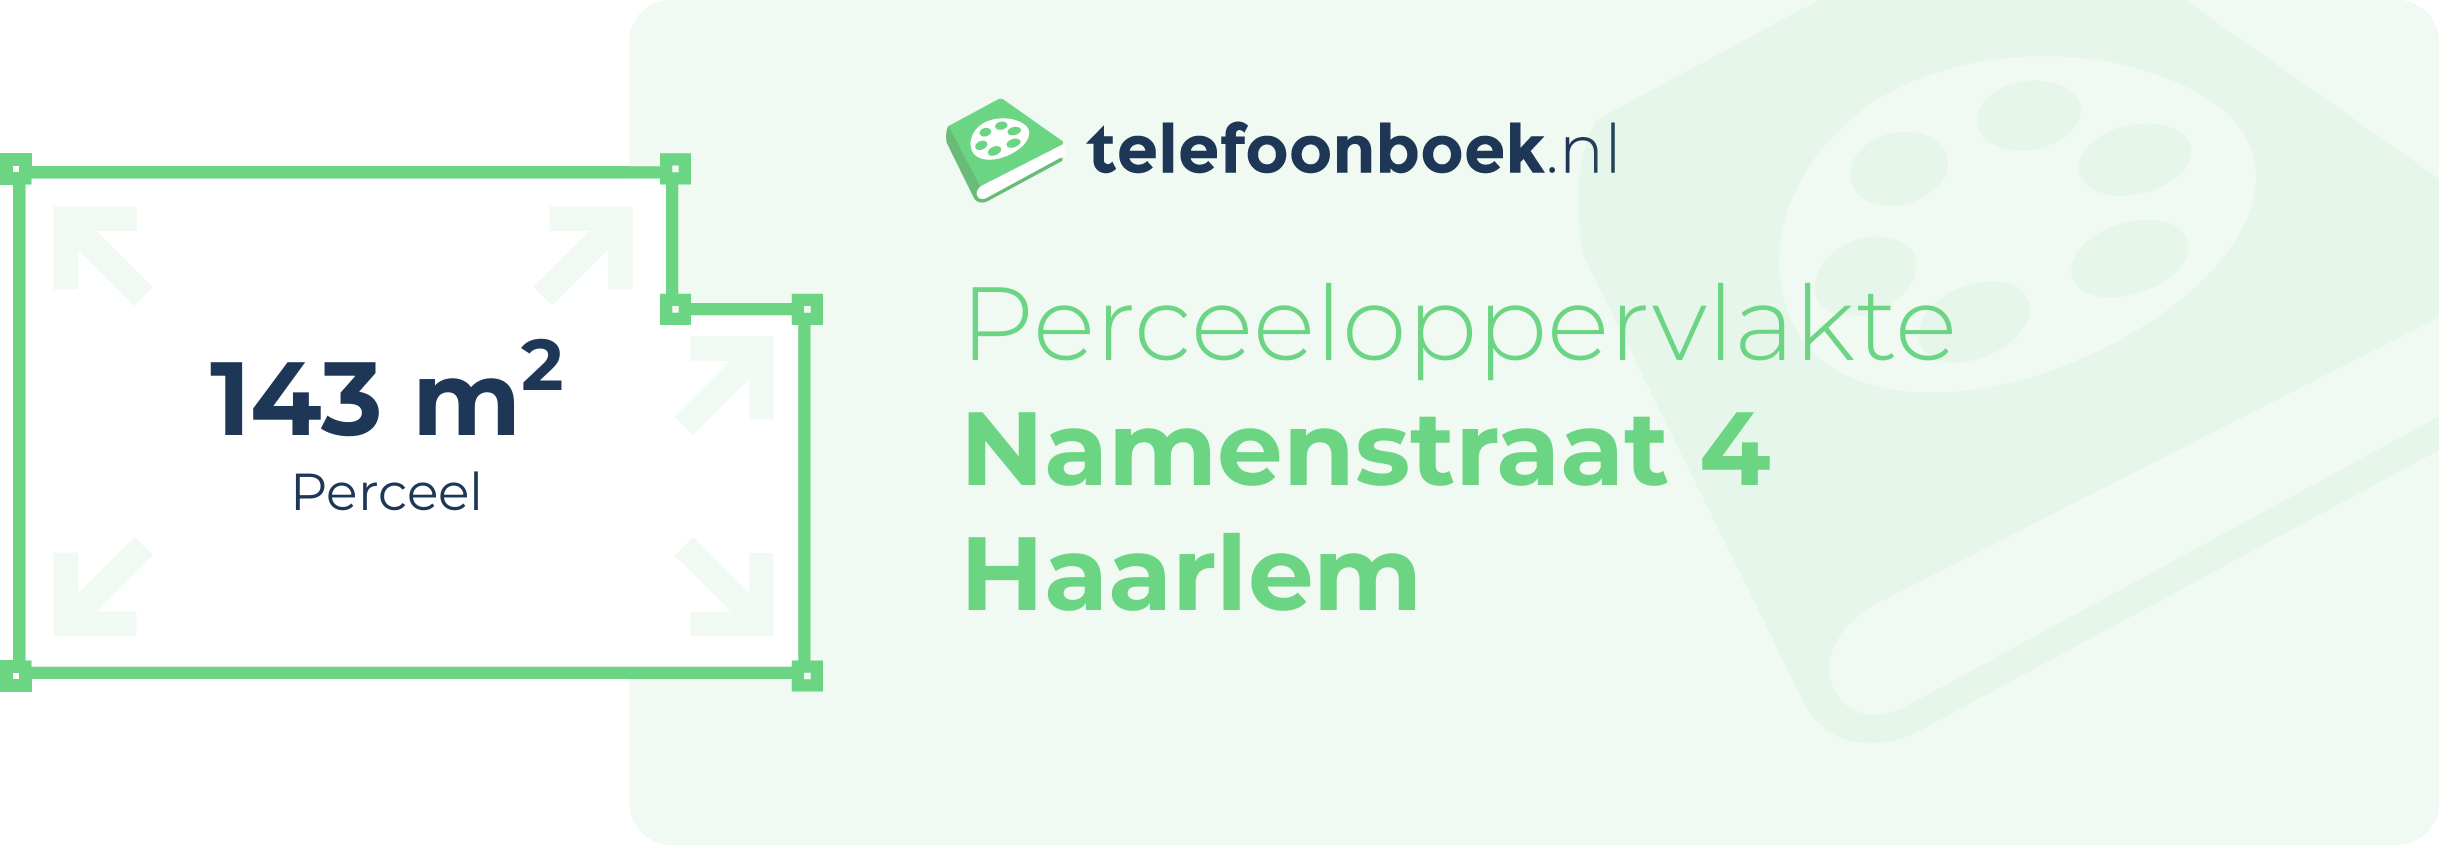 Perceeloppervlakte Namenstraat 4 Haarlem